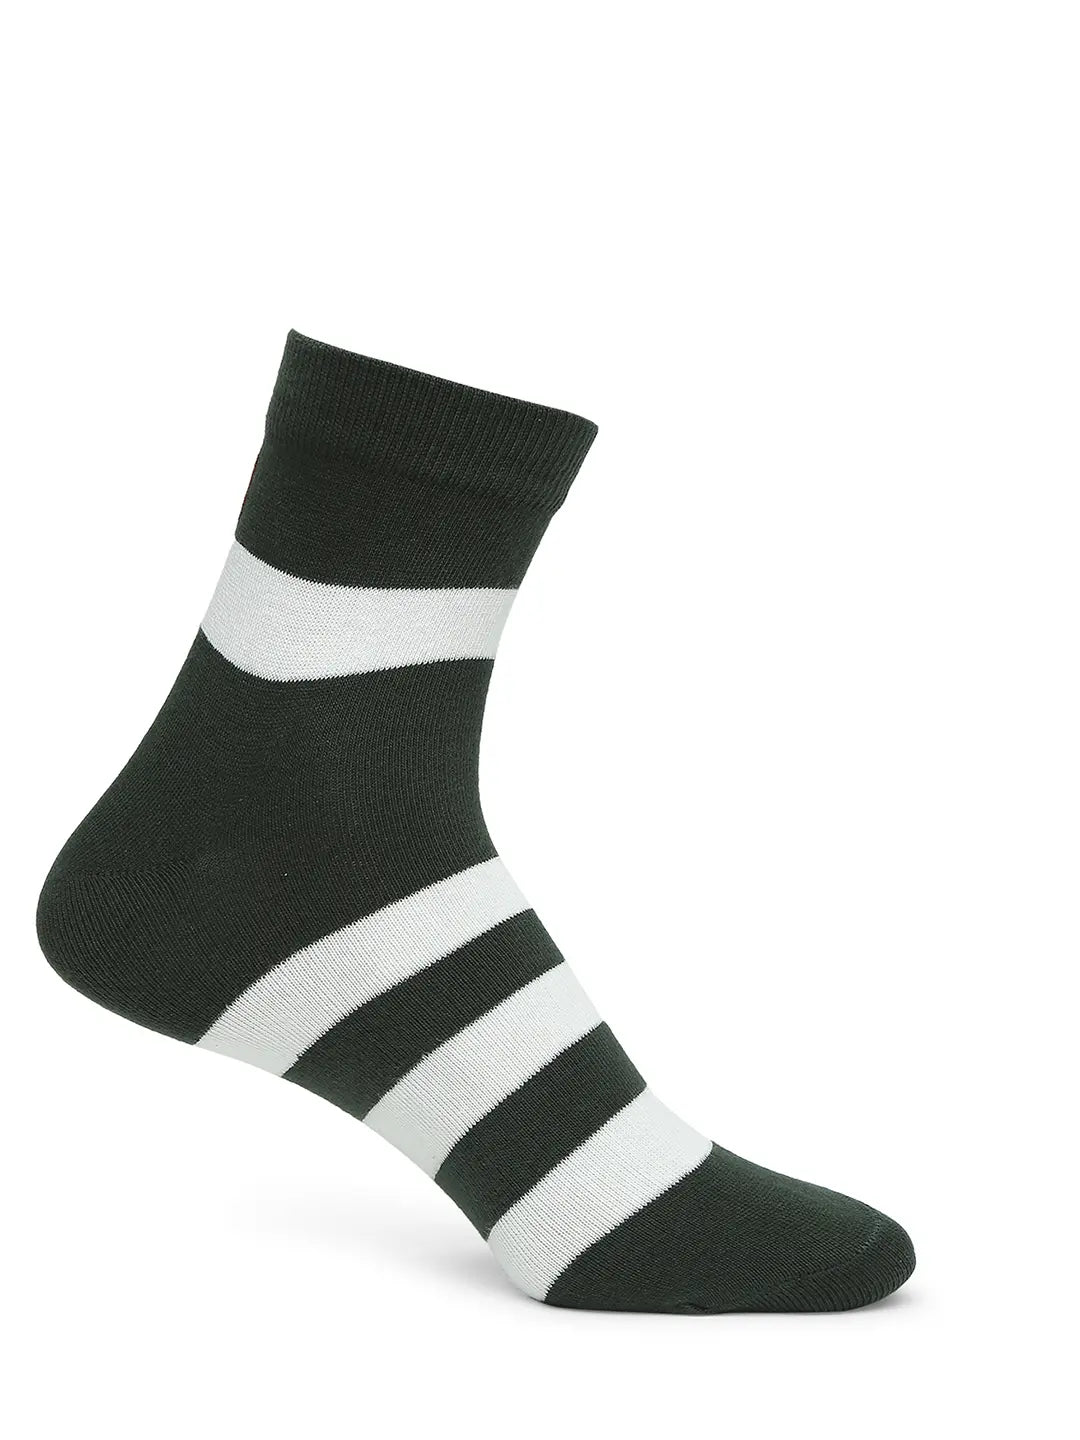 Men Premium Bottle Green & Maroon Ankle Length Socks - Pack Of 2- Underjeans by Spykar